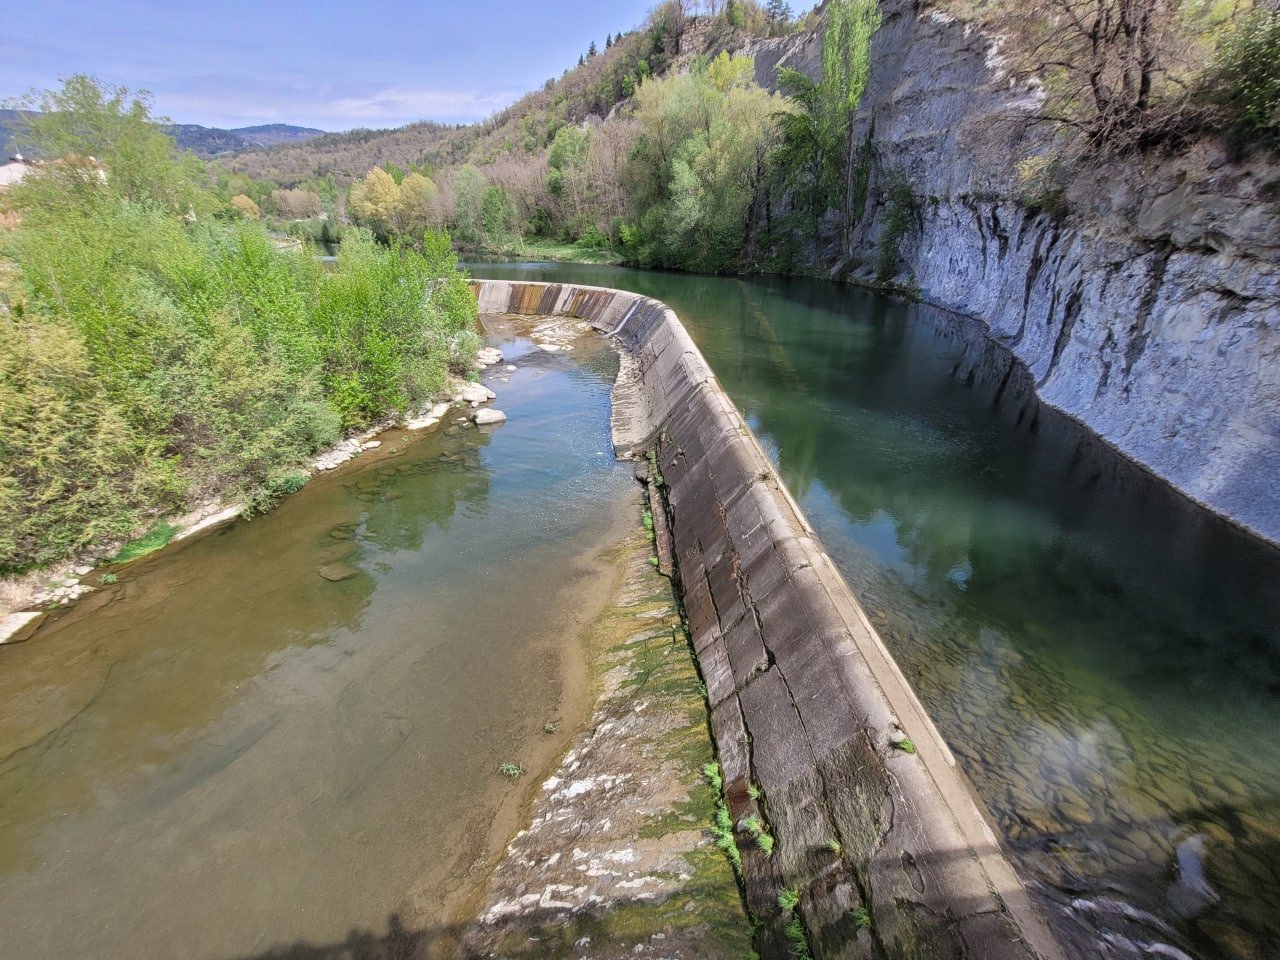 La Generalitat inicia expedients per gestionar tres centrals hidroelèctriques